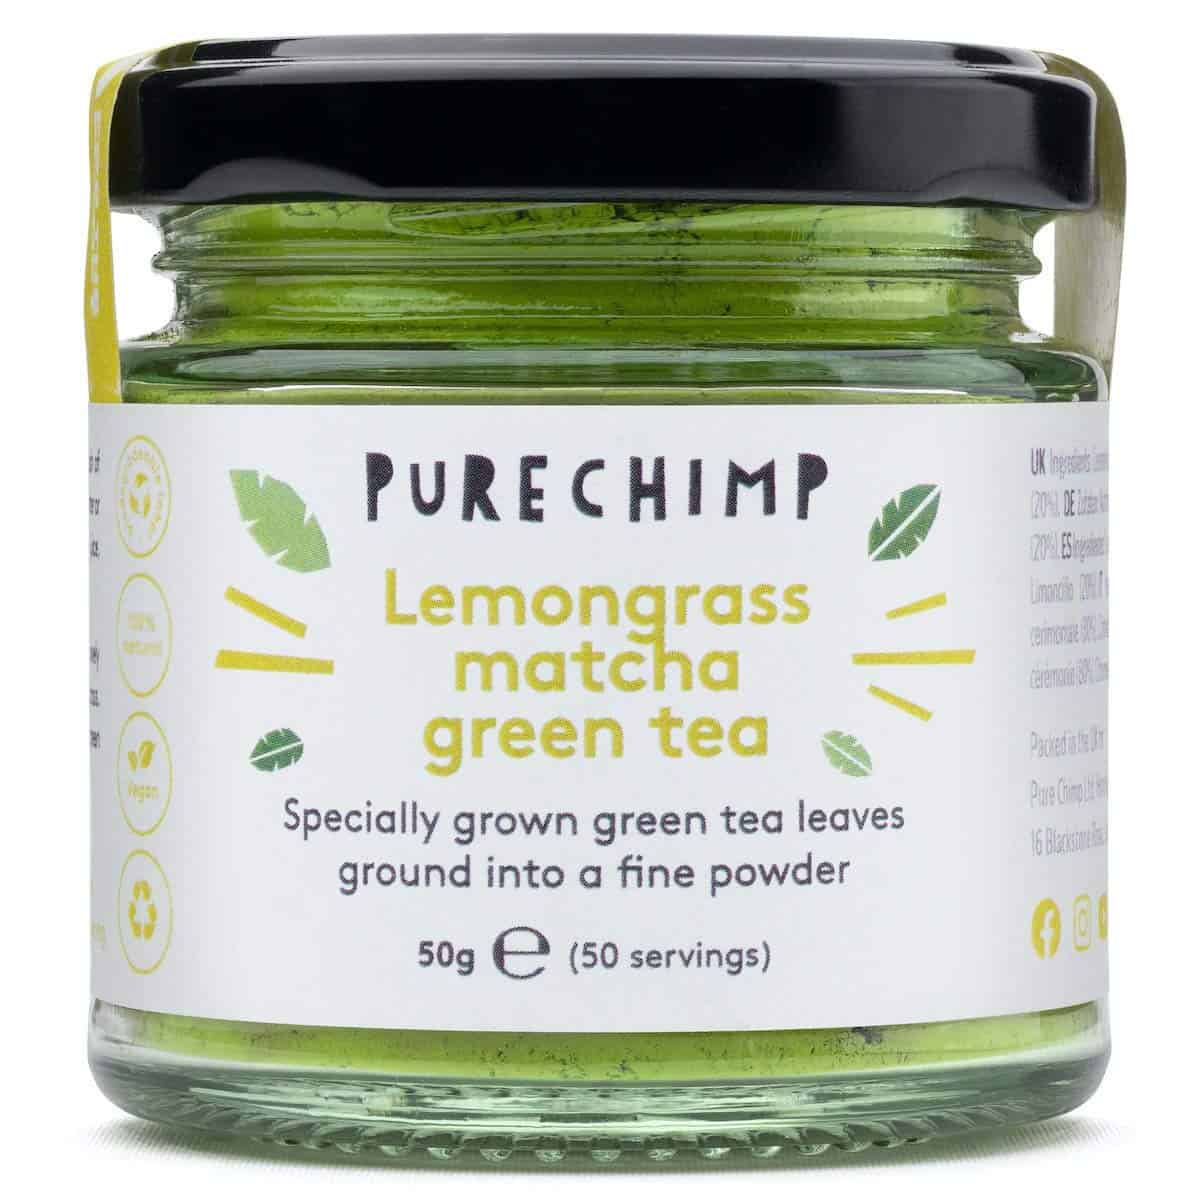 PureChimp Lemongrass Matcha Green Tea Powder